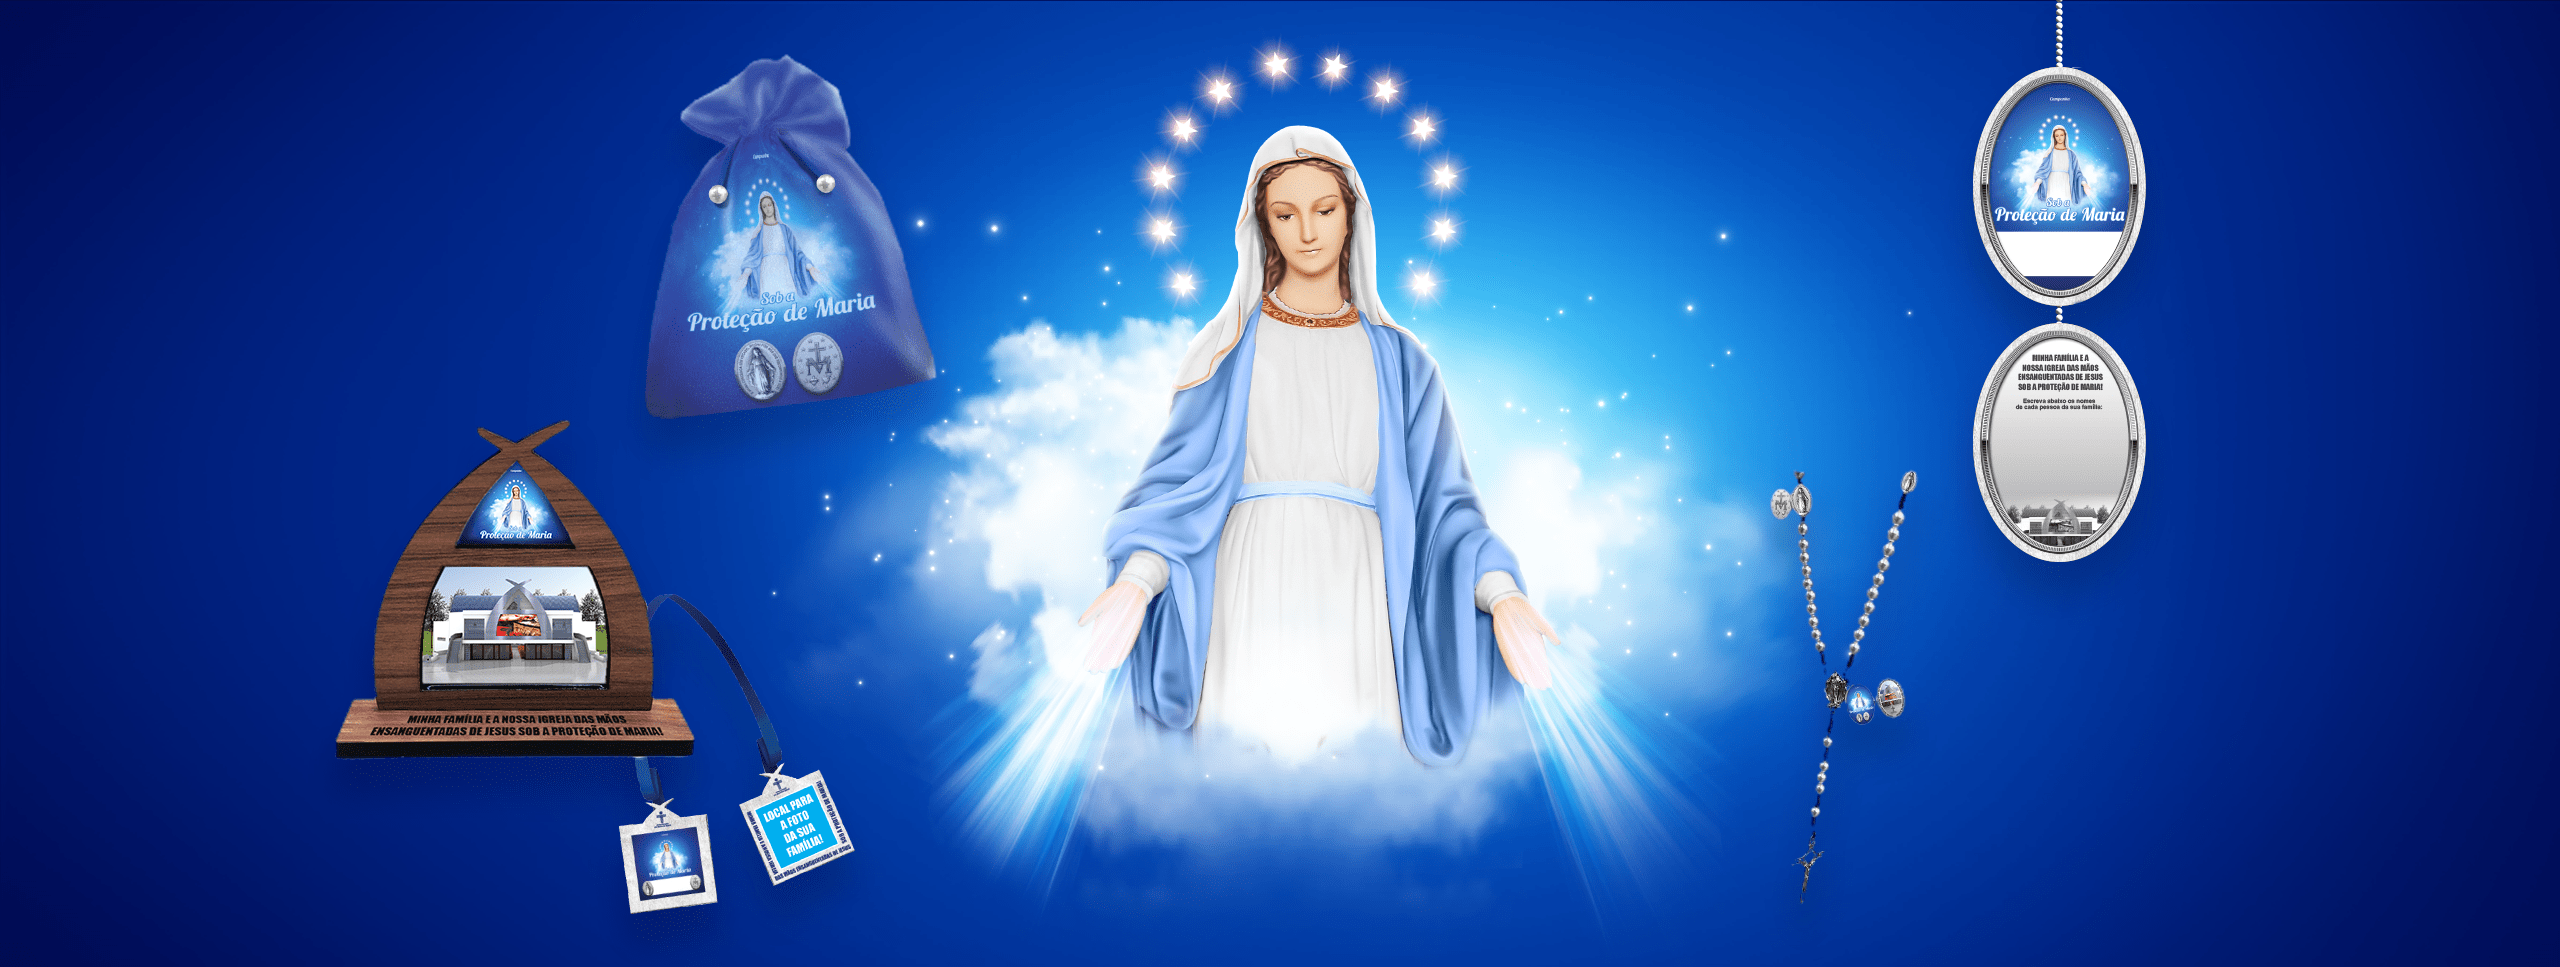 Campanha Sob a Proteção de Maria – Intercessora